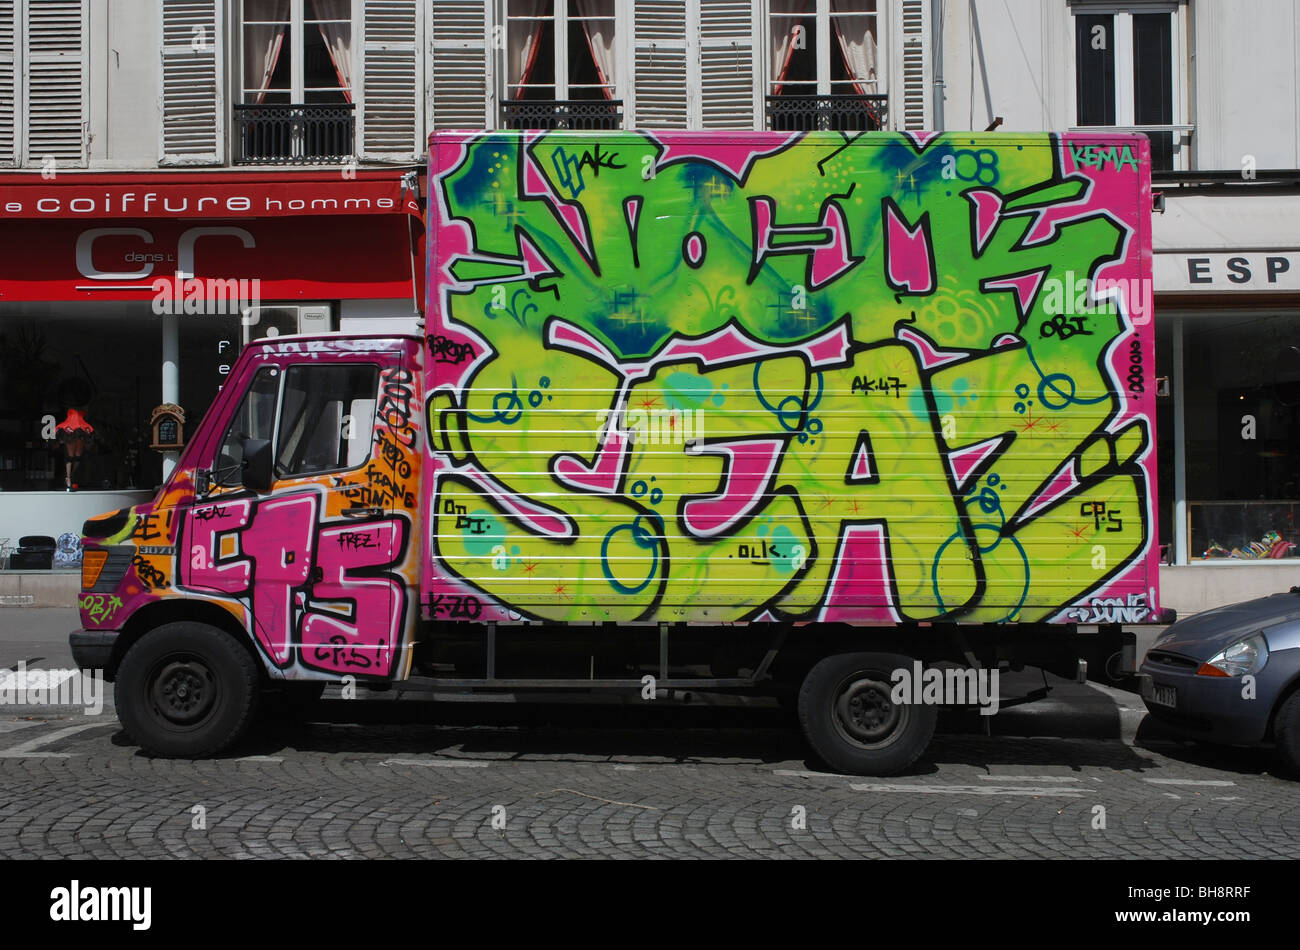 Graffiti covered van in Paris Stock Photo